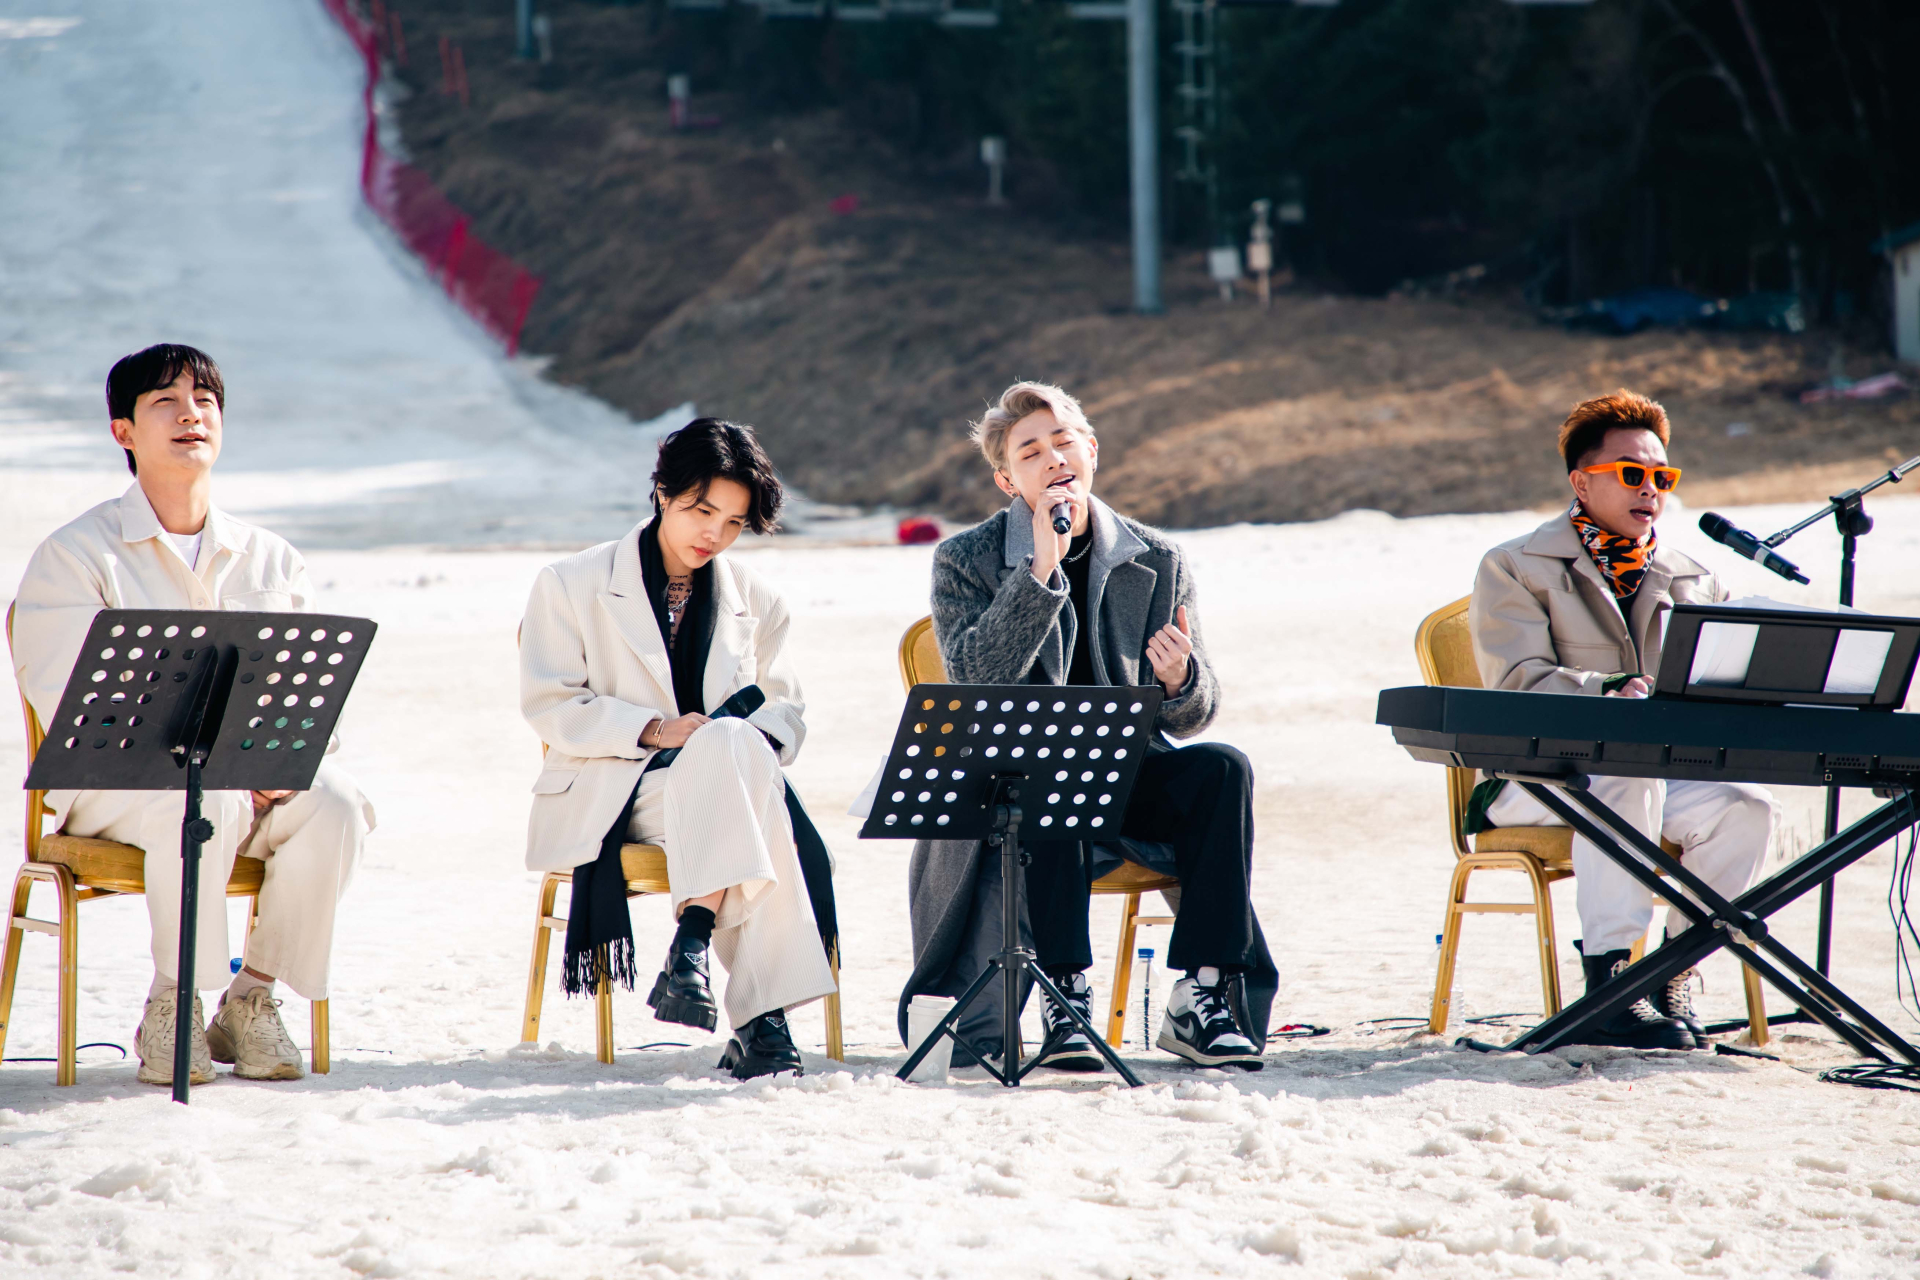 Tập 1 của “busking show” - Xin Chào Hàn Quốc - Xin Chào Gangwon-do đã đạt được 1 triệu lượt view trên các nền tảng chỉ sau 3 ngày phát sóng